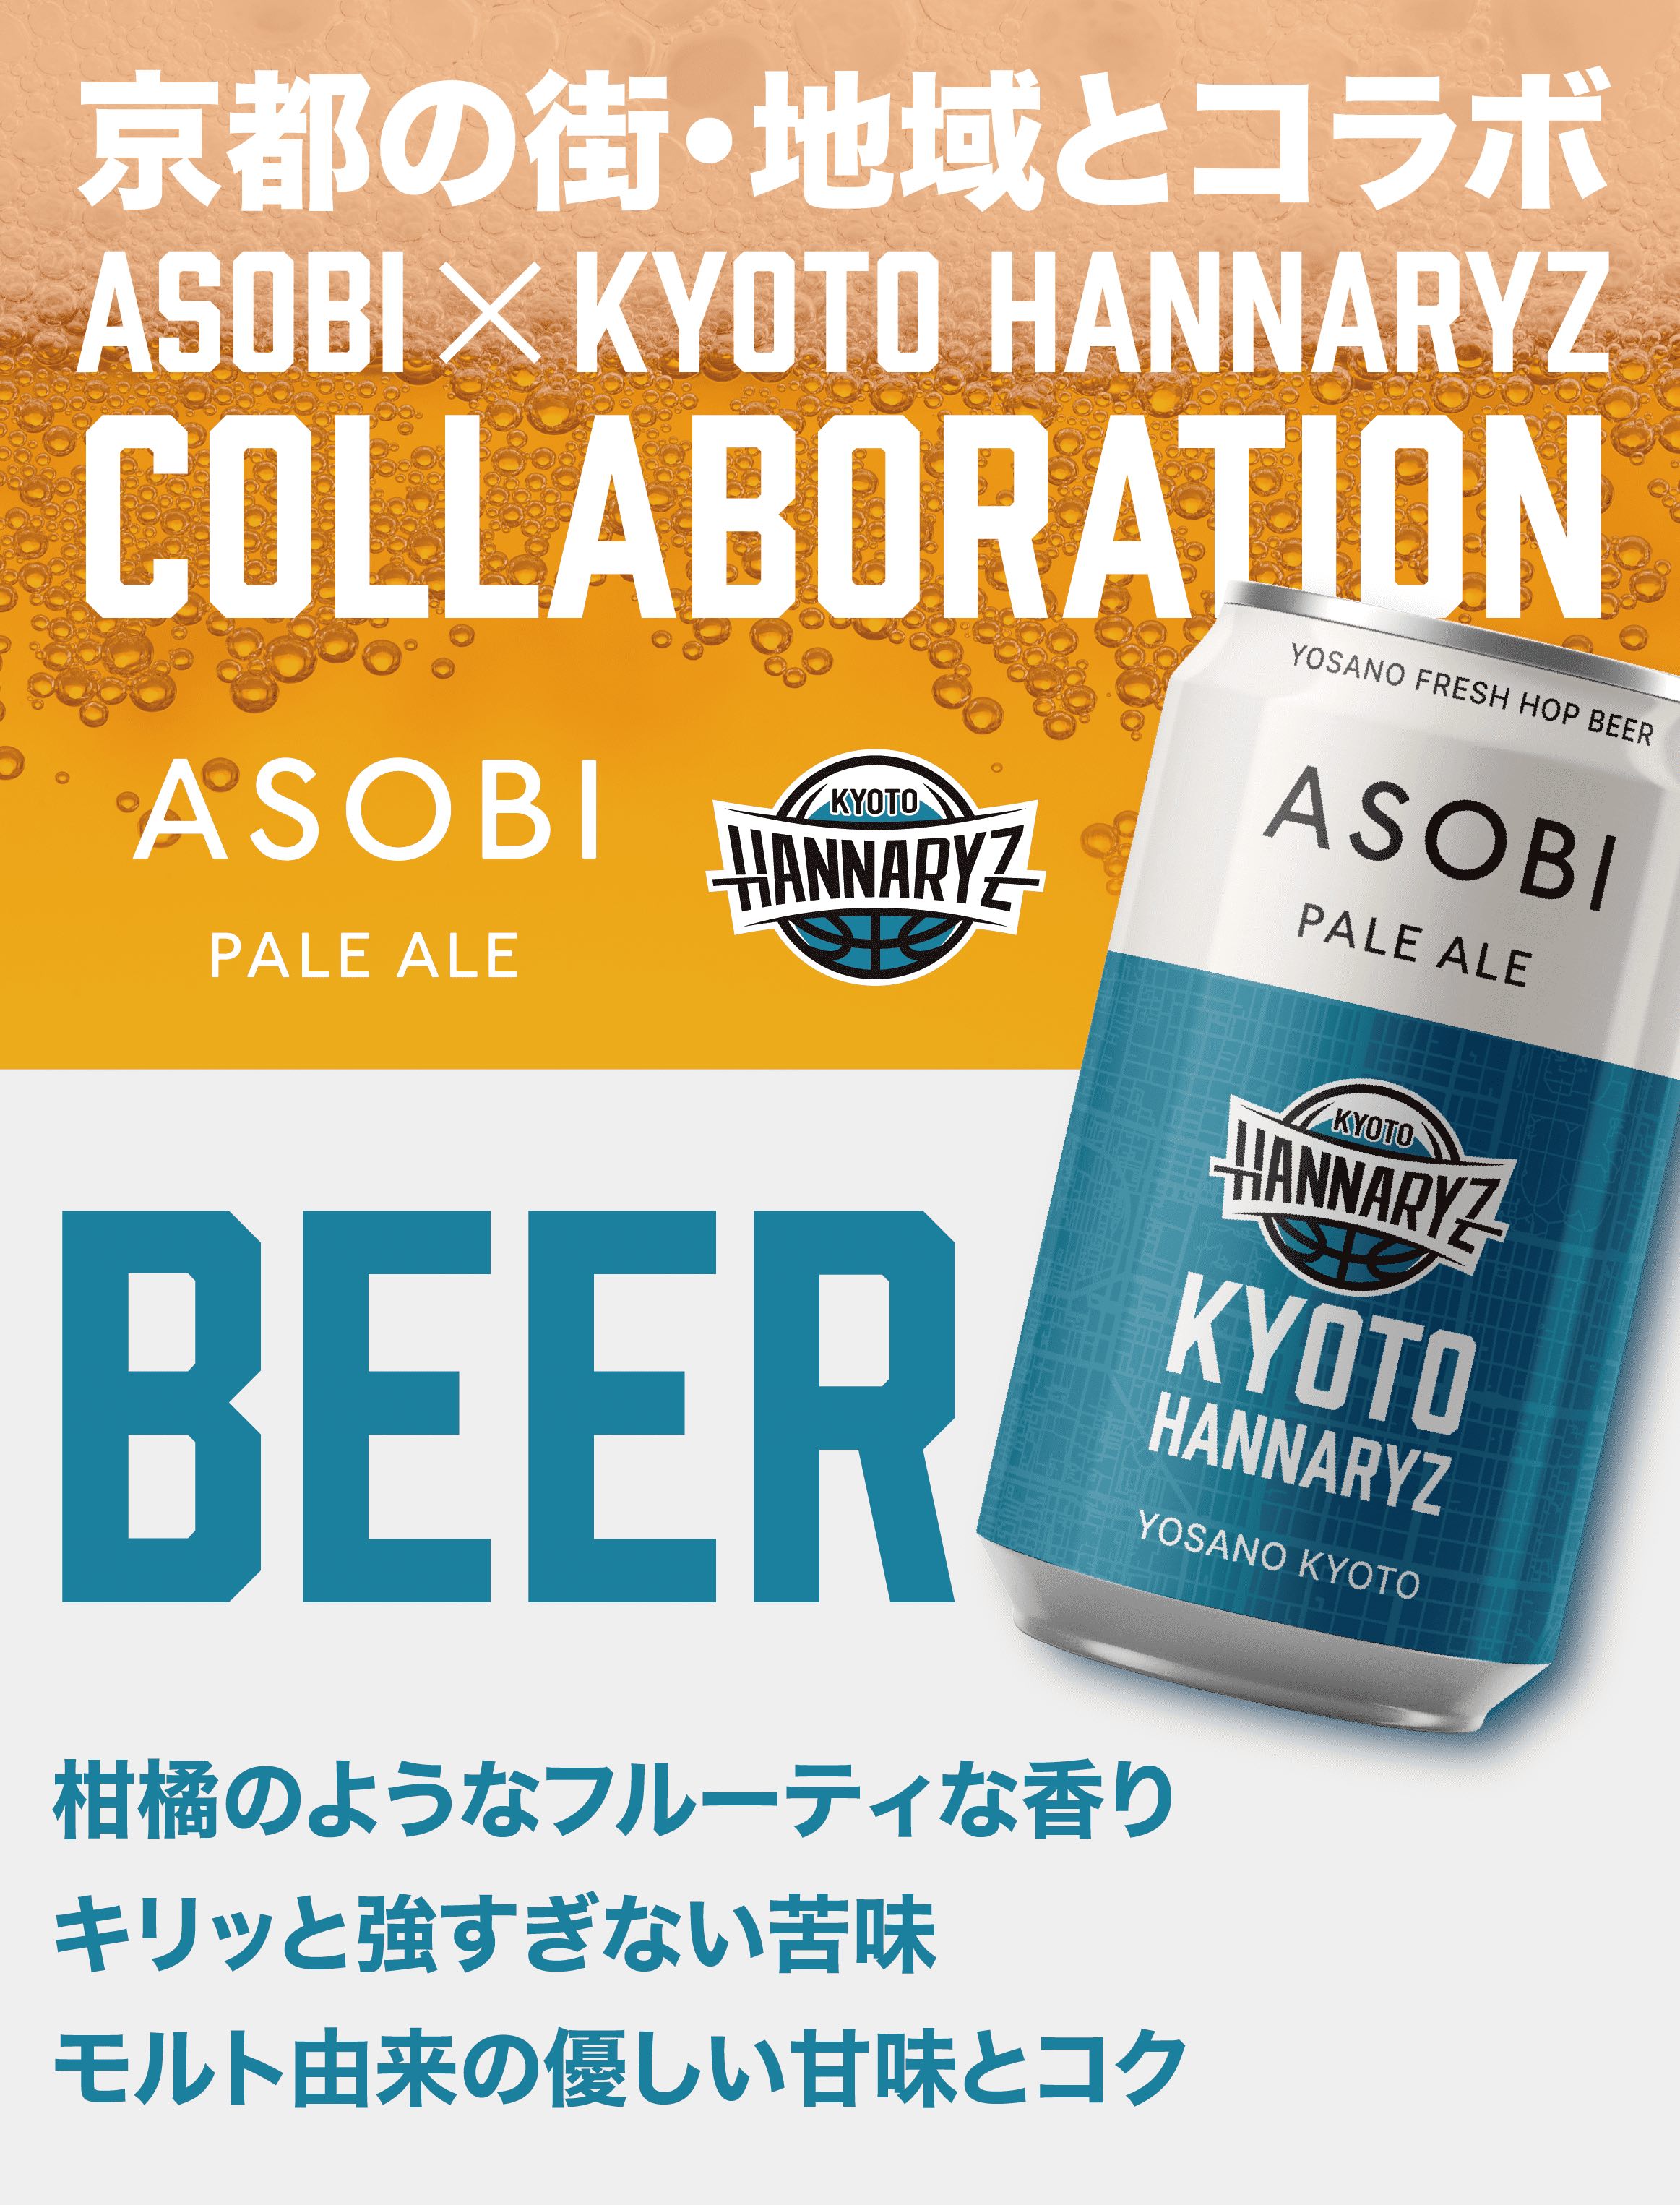 ASOBI - 京都ハンナリーズ COLLABORATION LABEL ビール